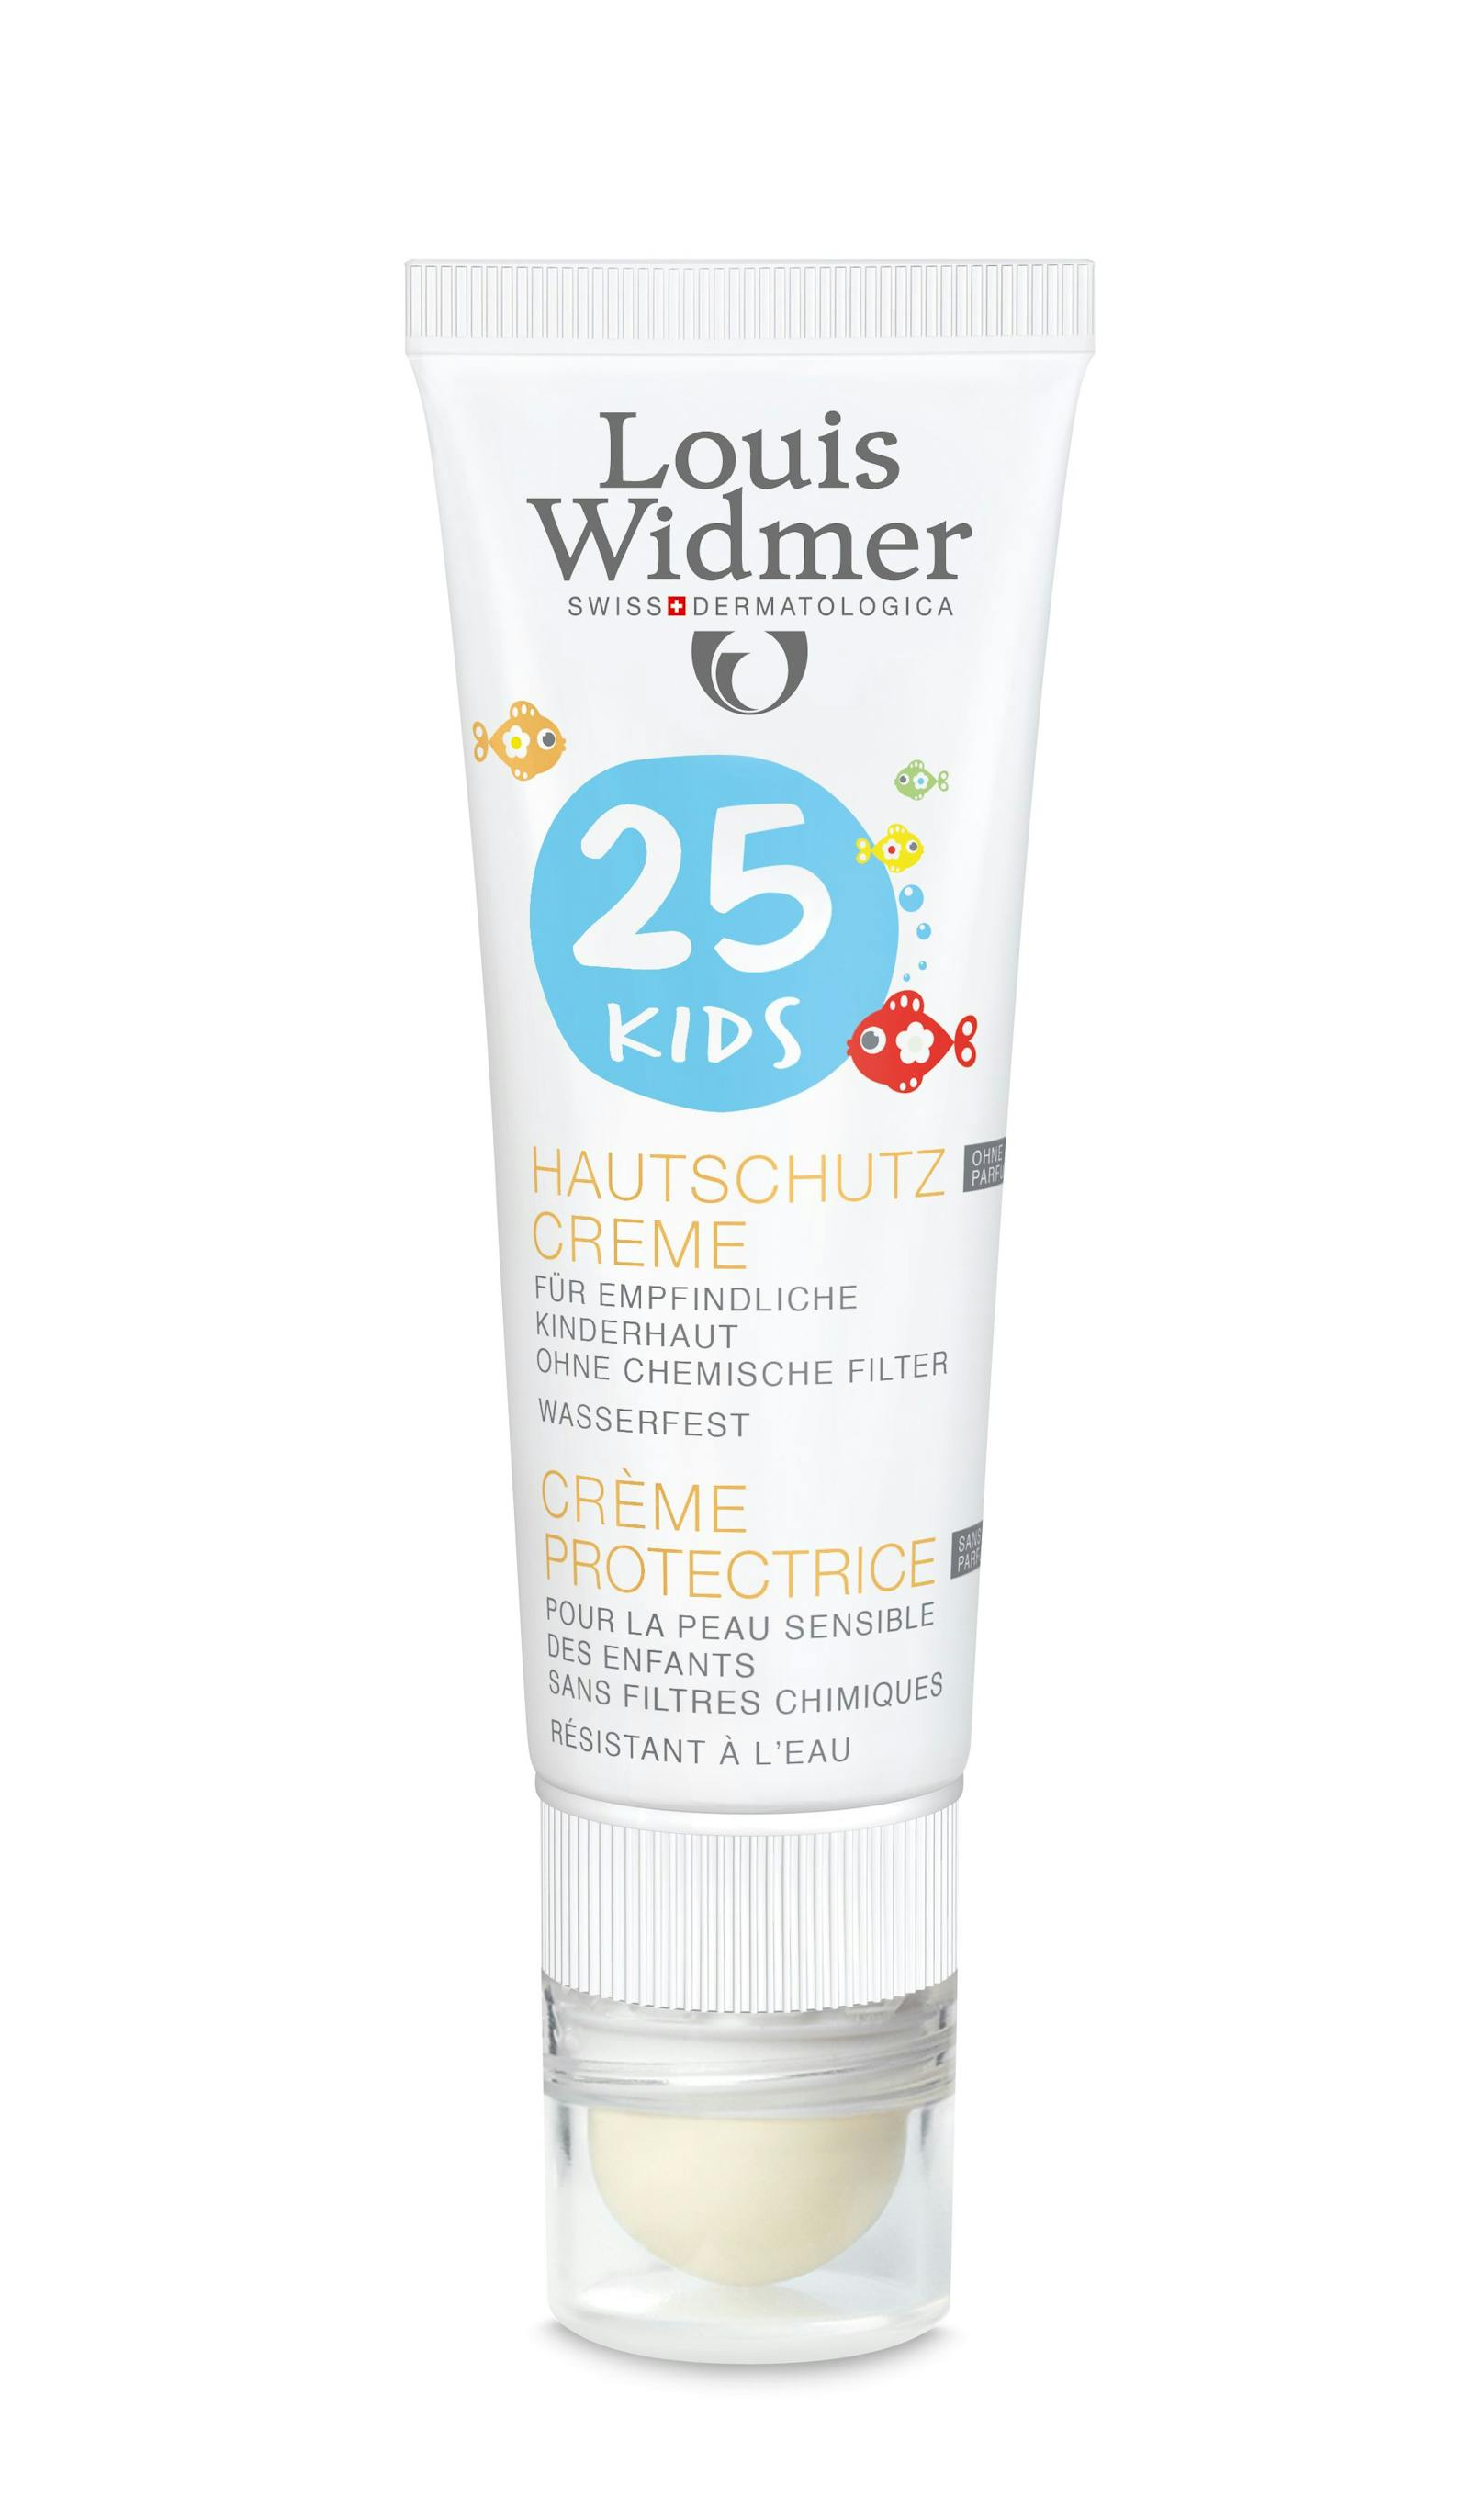 Kids Hautschutz Creme mit LSF 25 und integriertem Lippenpflegestift mit LSF 50 um 12,90 Euro.